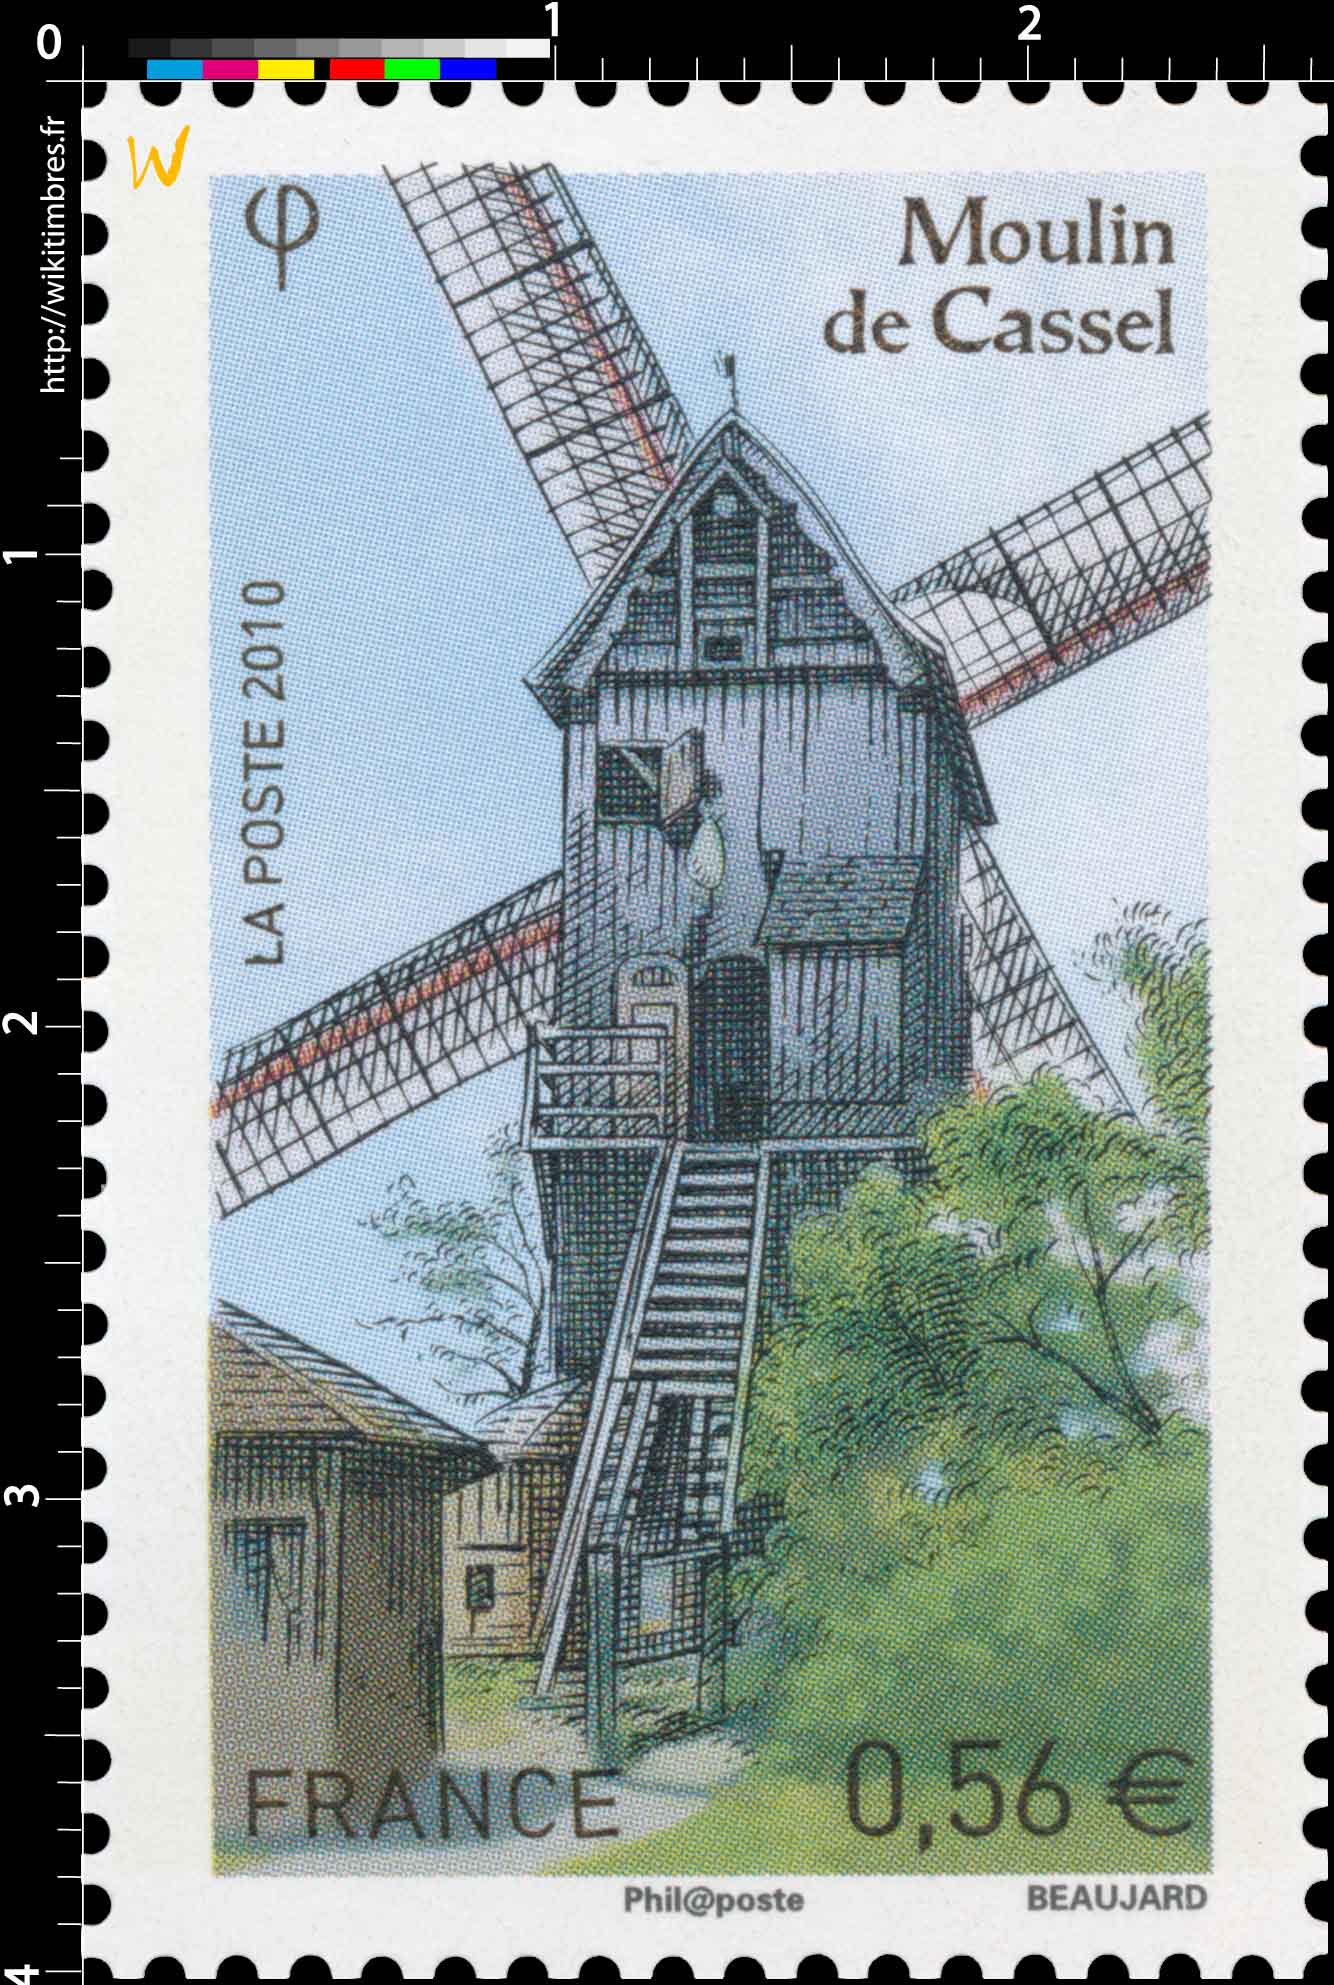 2010 Moulin de Cassel